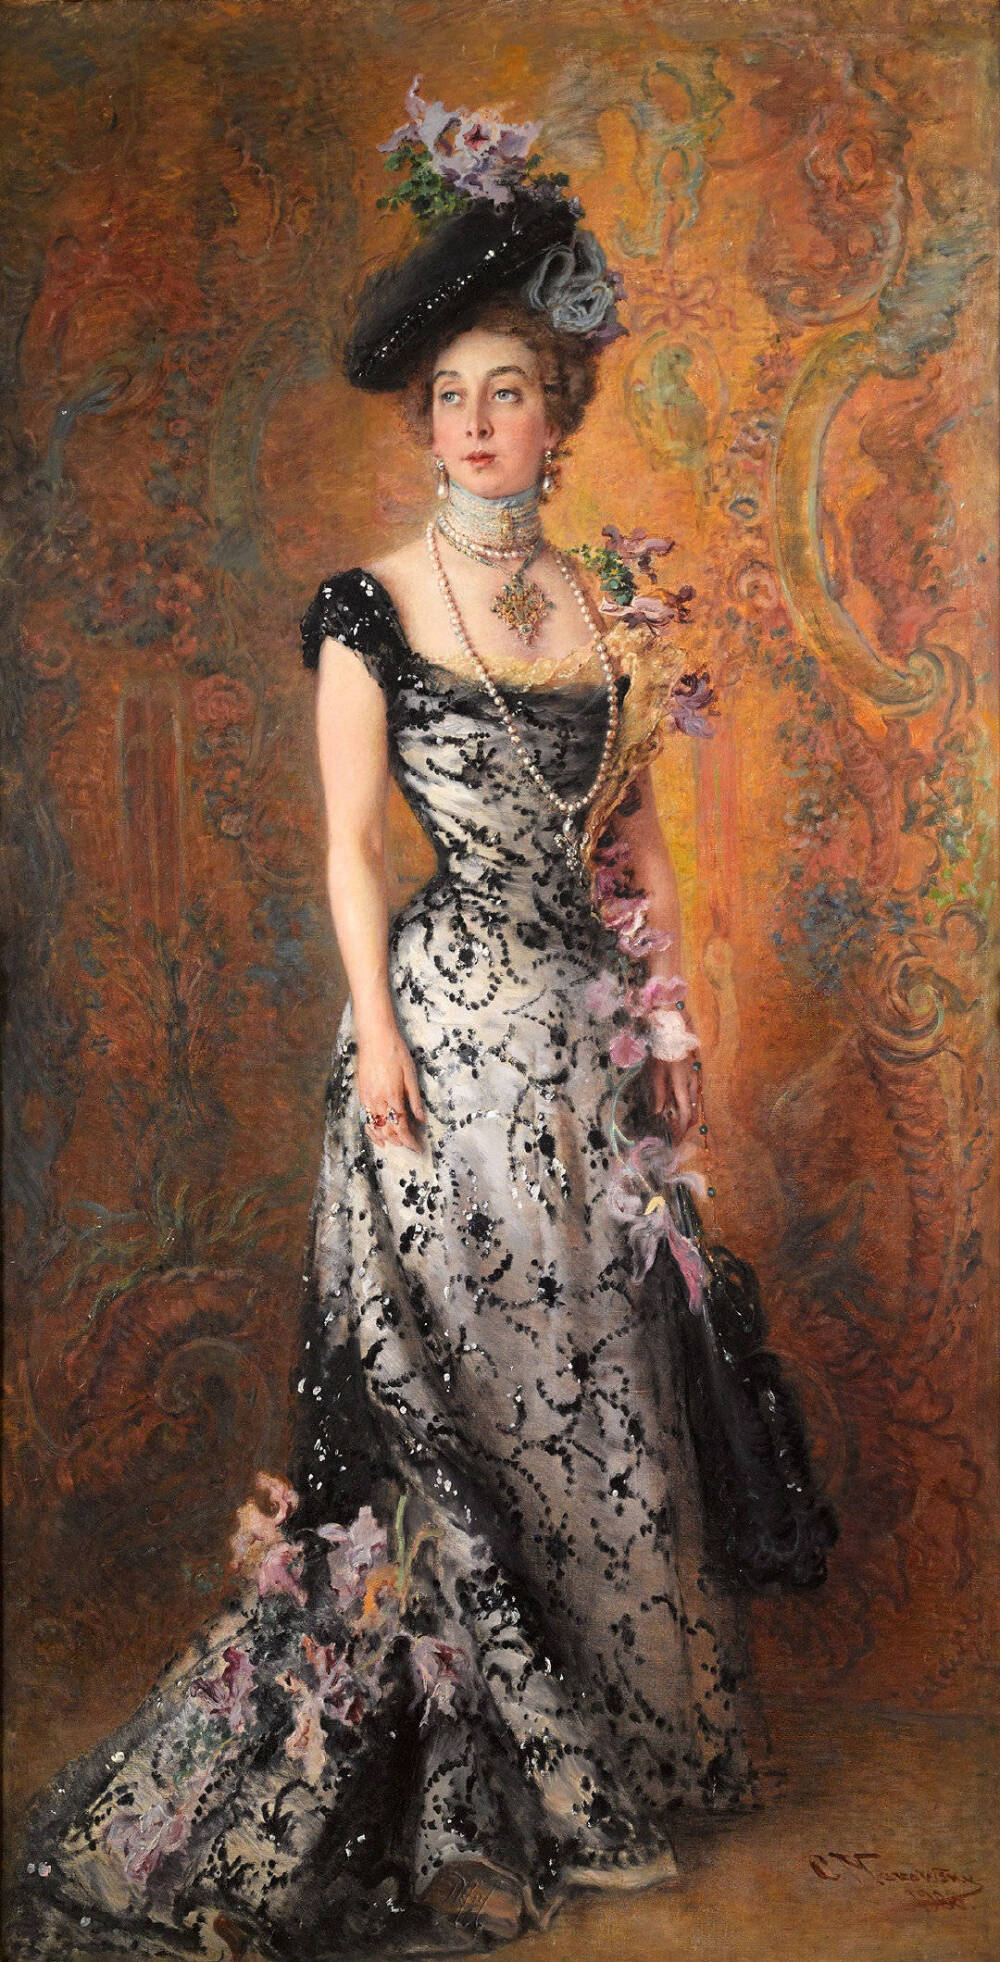 油画 | 奢华珠宝，服装
“这是一碗狗粮——艺术家妻子的肖像。细节精致，神韵动人”。作者：康斯坦丁·马科夫斯基（1839年 - 1915年）一位有影响力的俄罗斯画家。